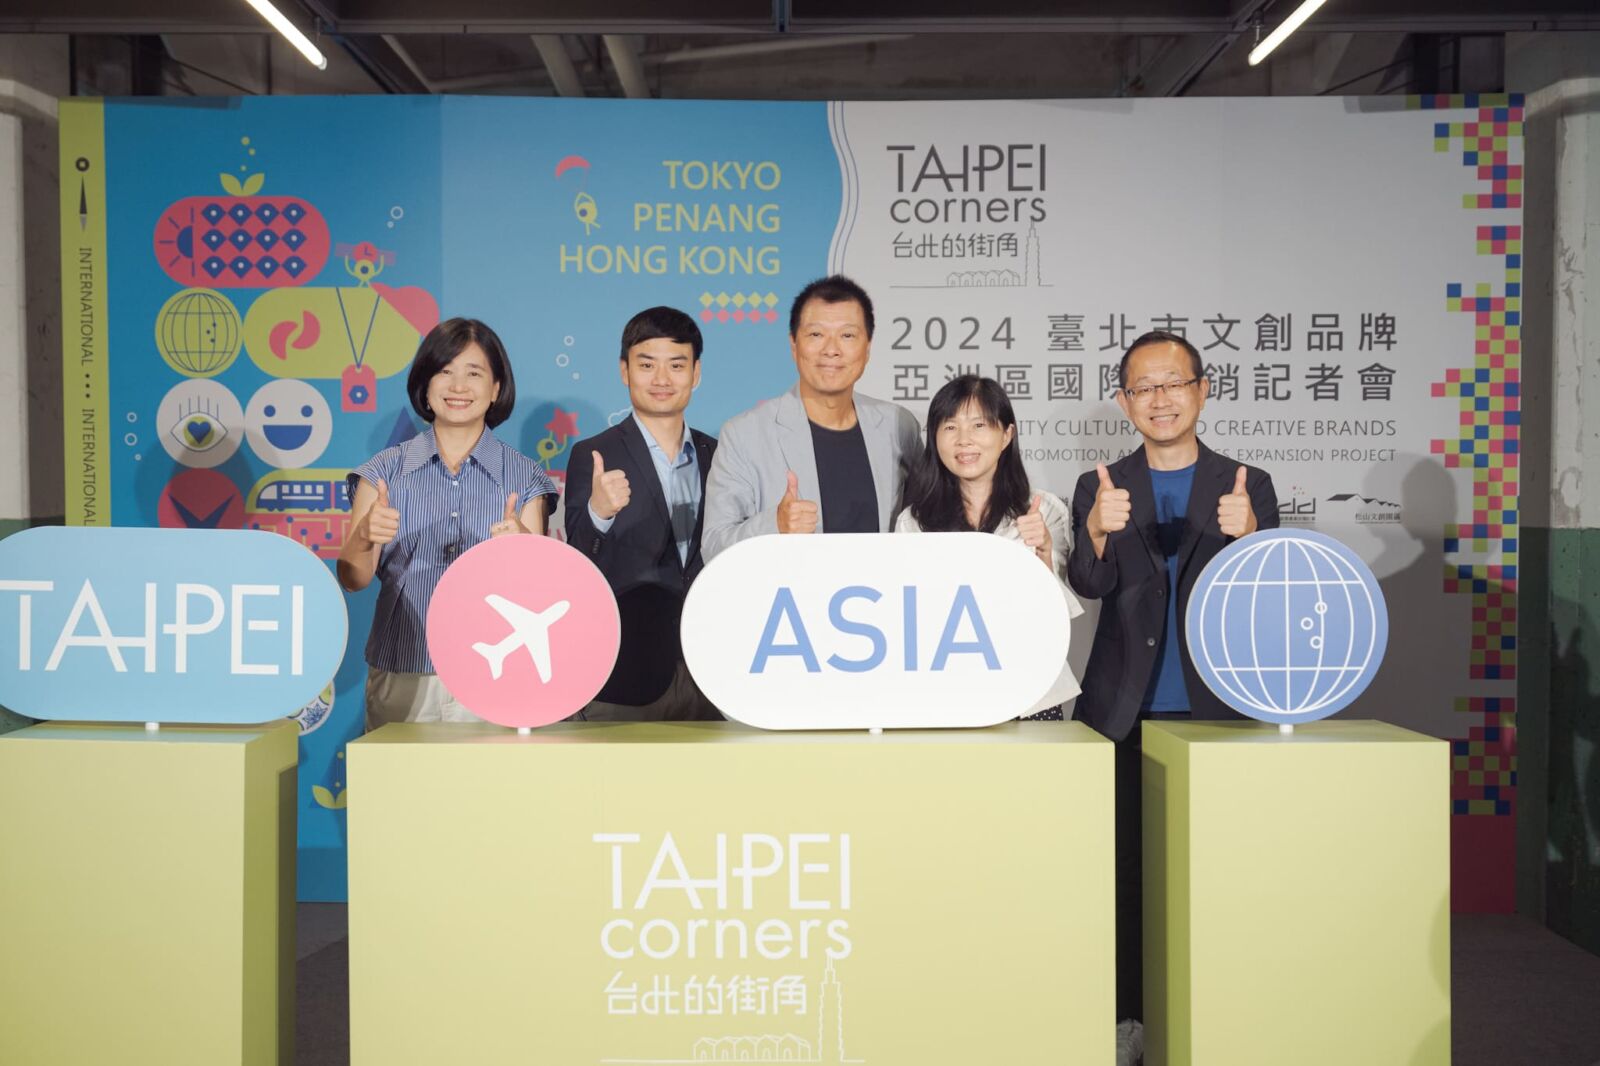 【有影】台北文創品牌國際化 TAIPEI corners帶領54家次品牌前進東京、檳城、香港 17